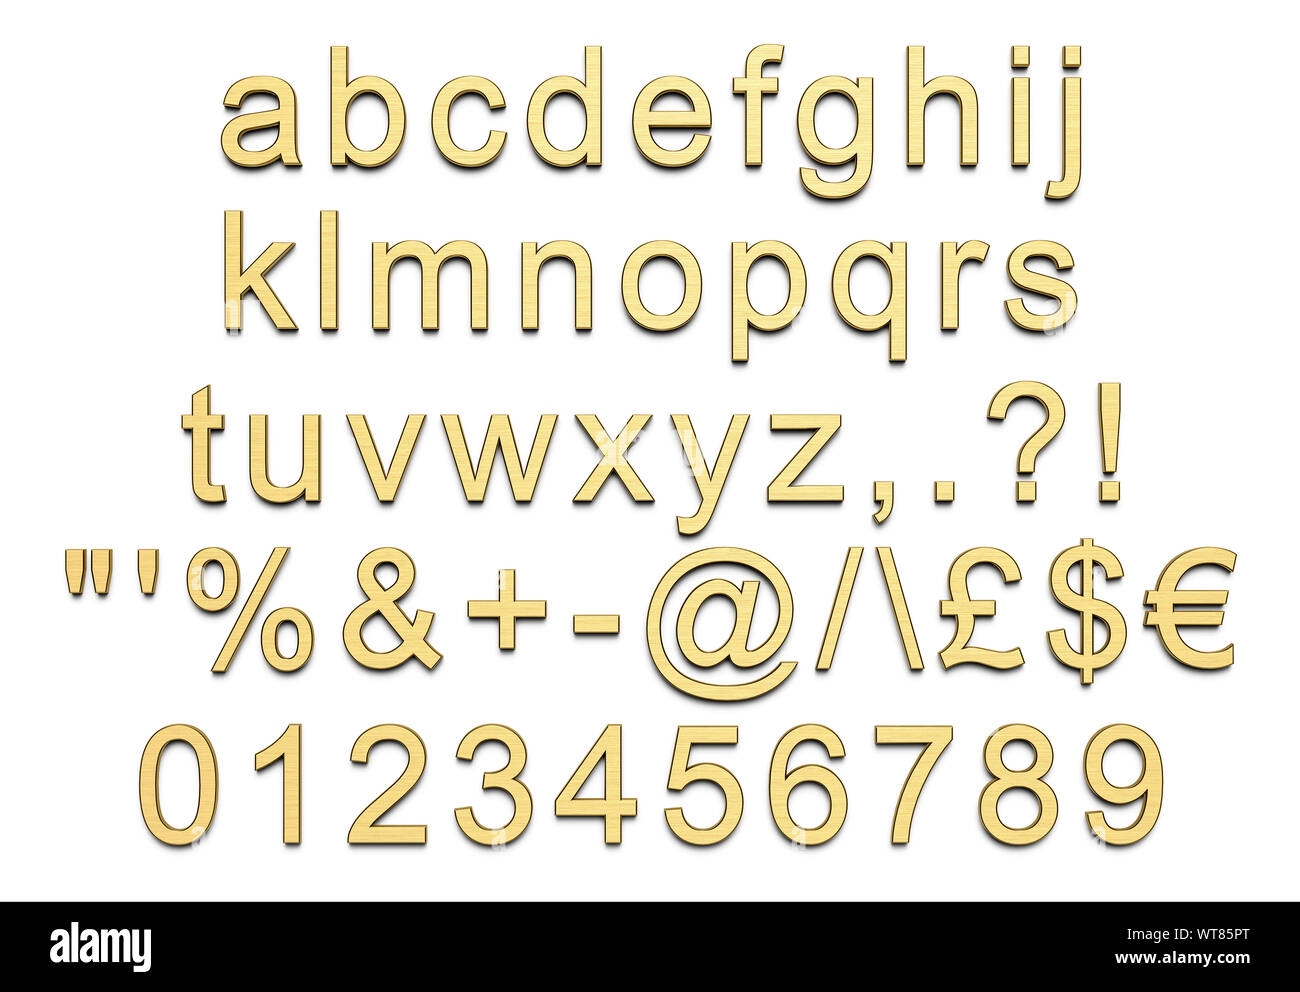 Letras, números y símbolos del alfabeto en minúsculas, oro pulido Foto de stock